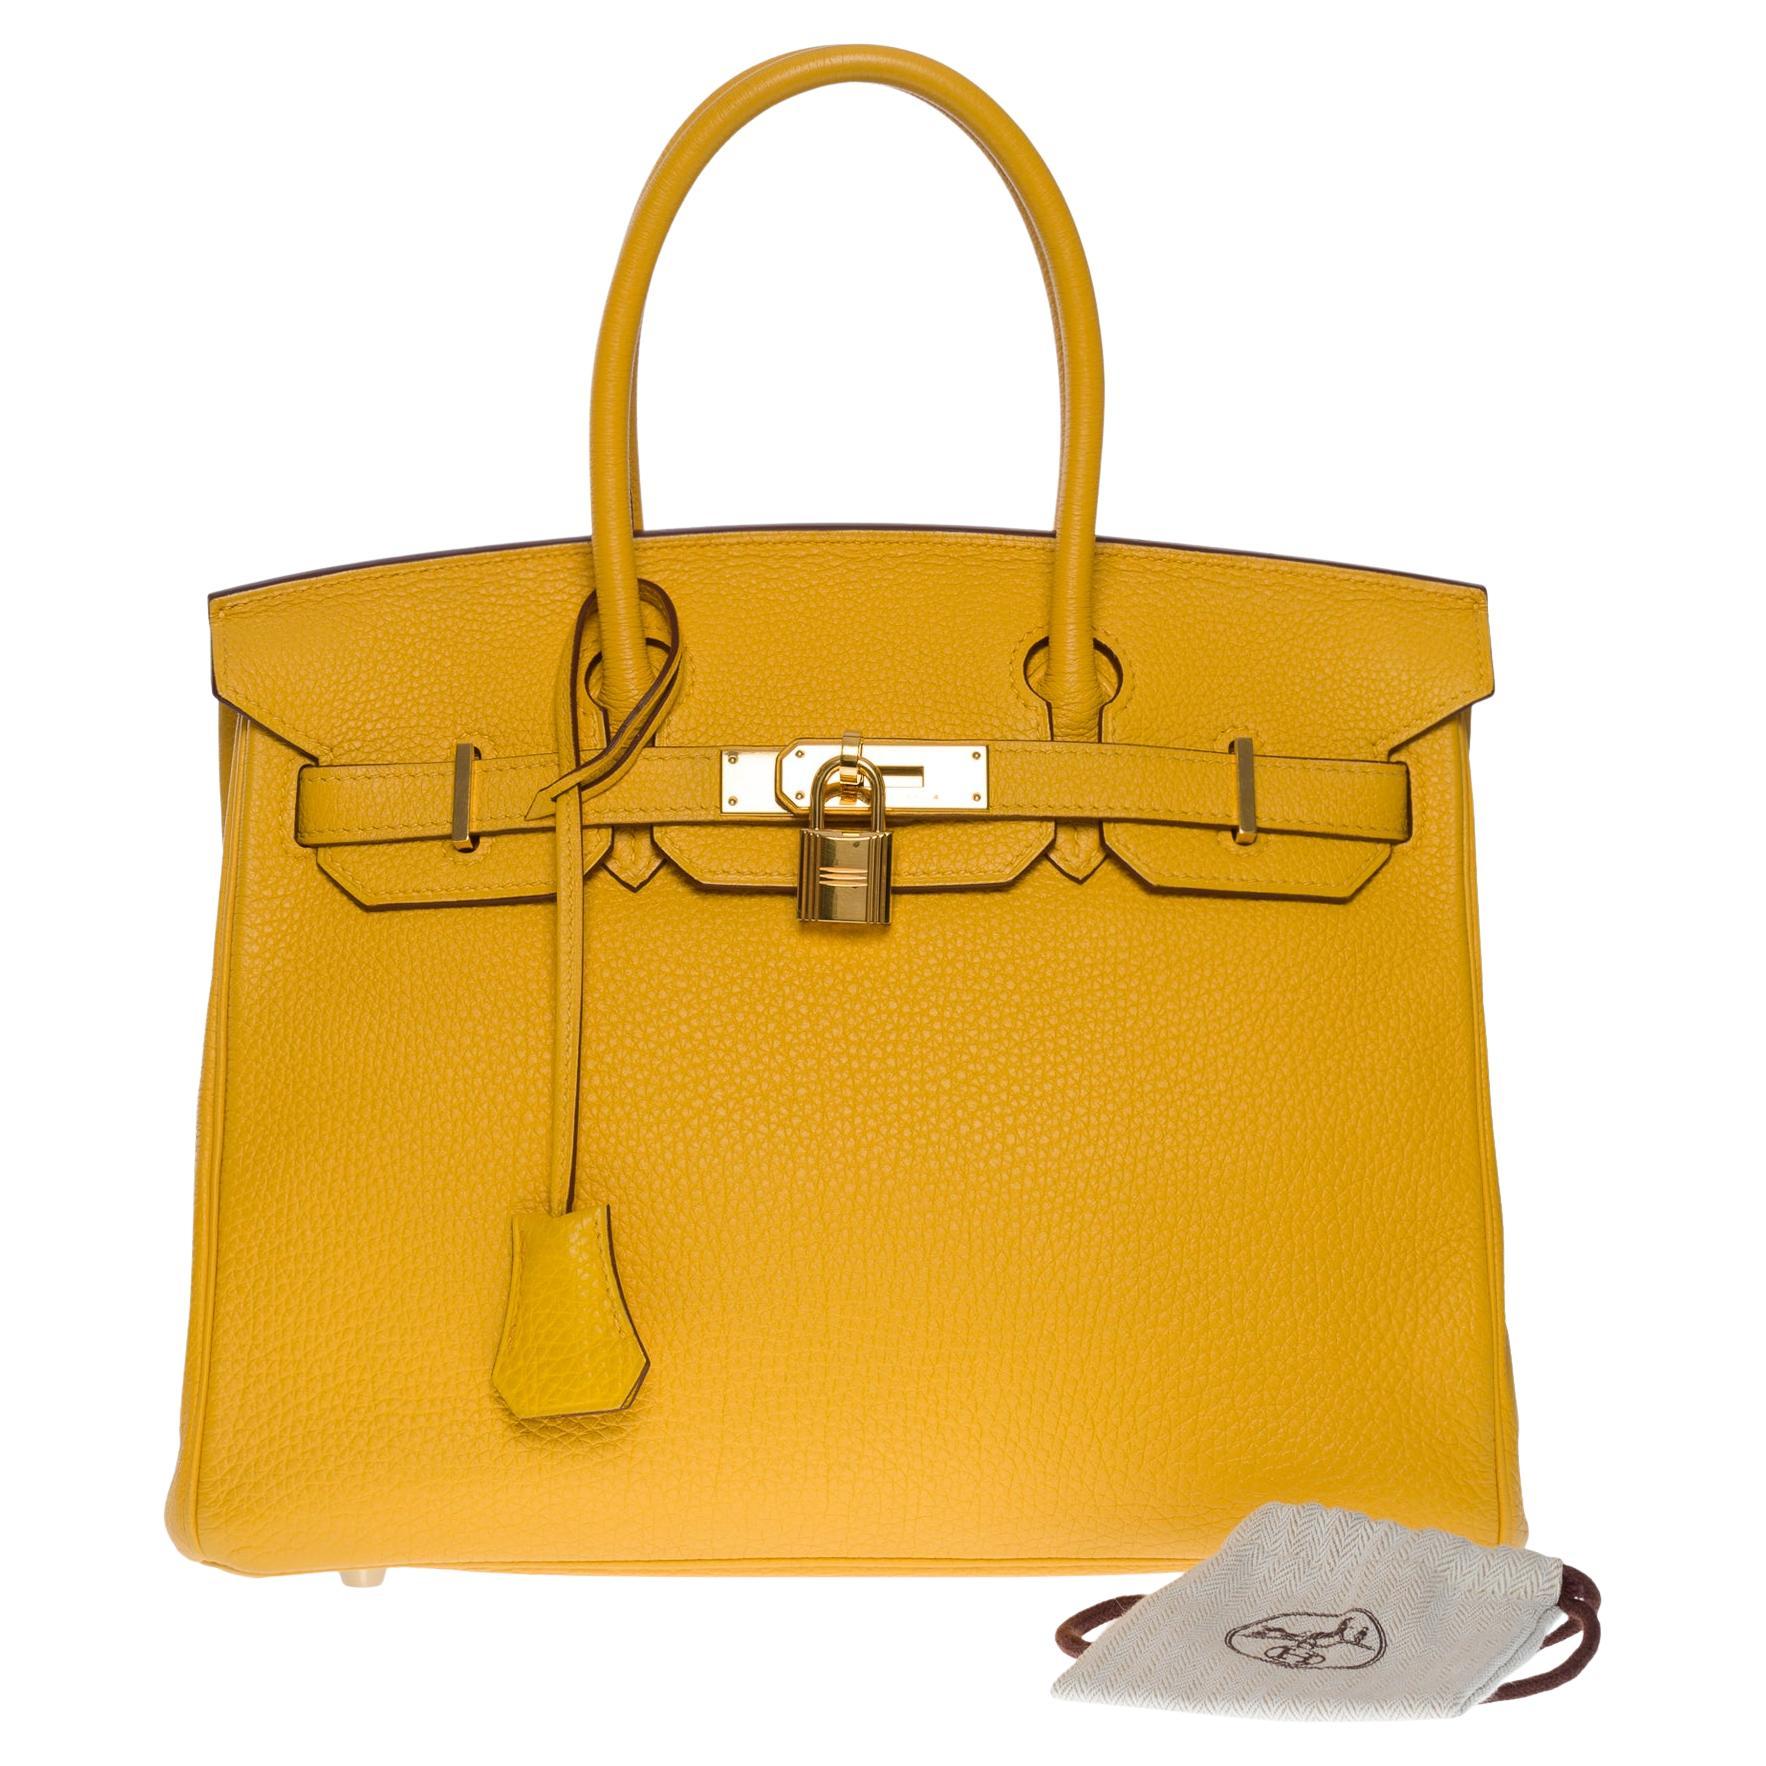 Amazing & Bright Hermès Birkin 30 Handtasche in Gelb Togo Leder, GHW